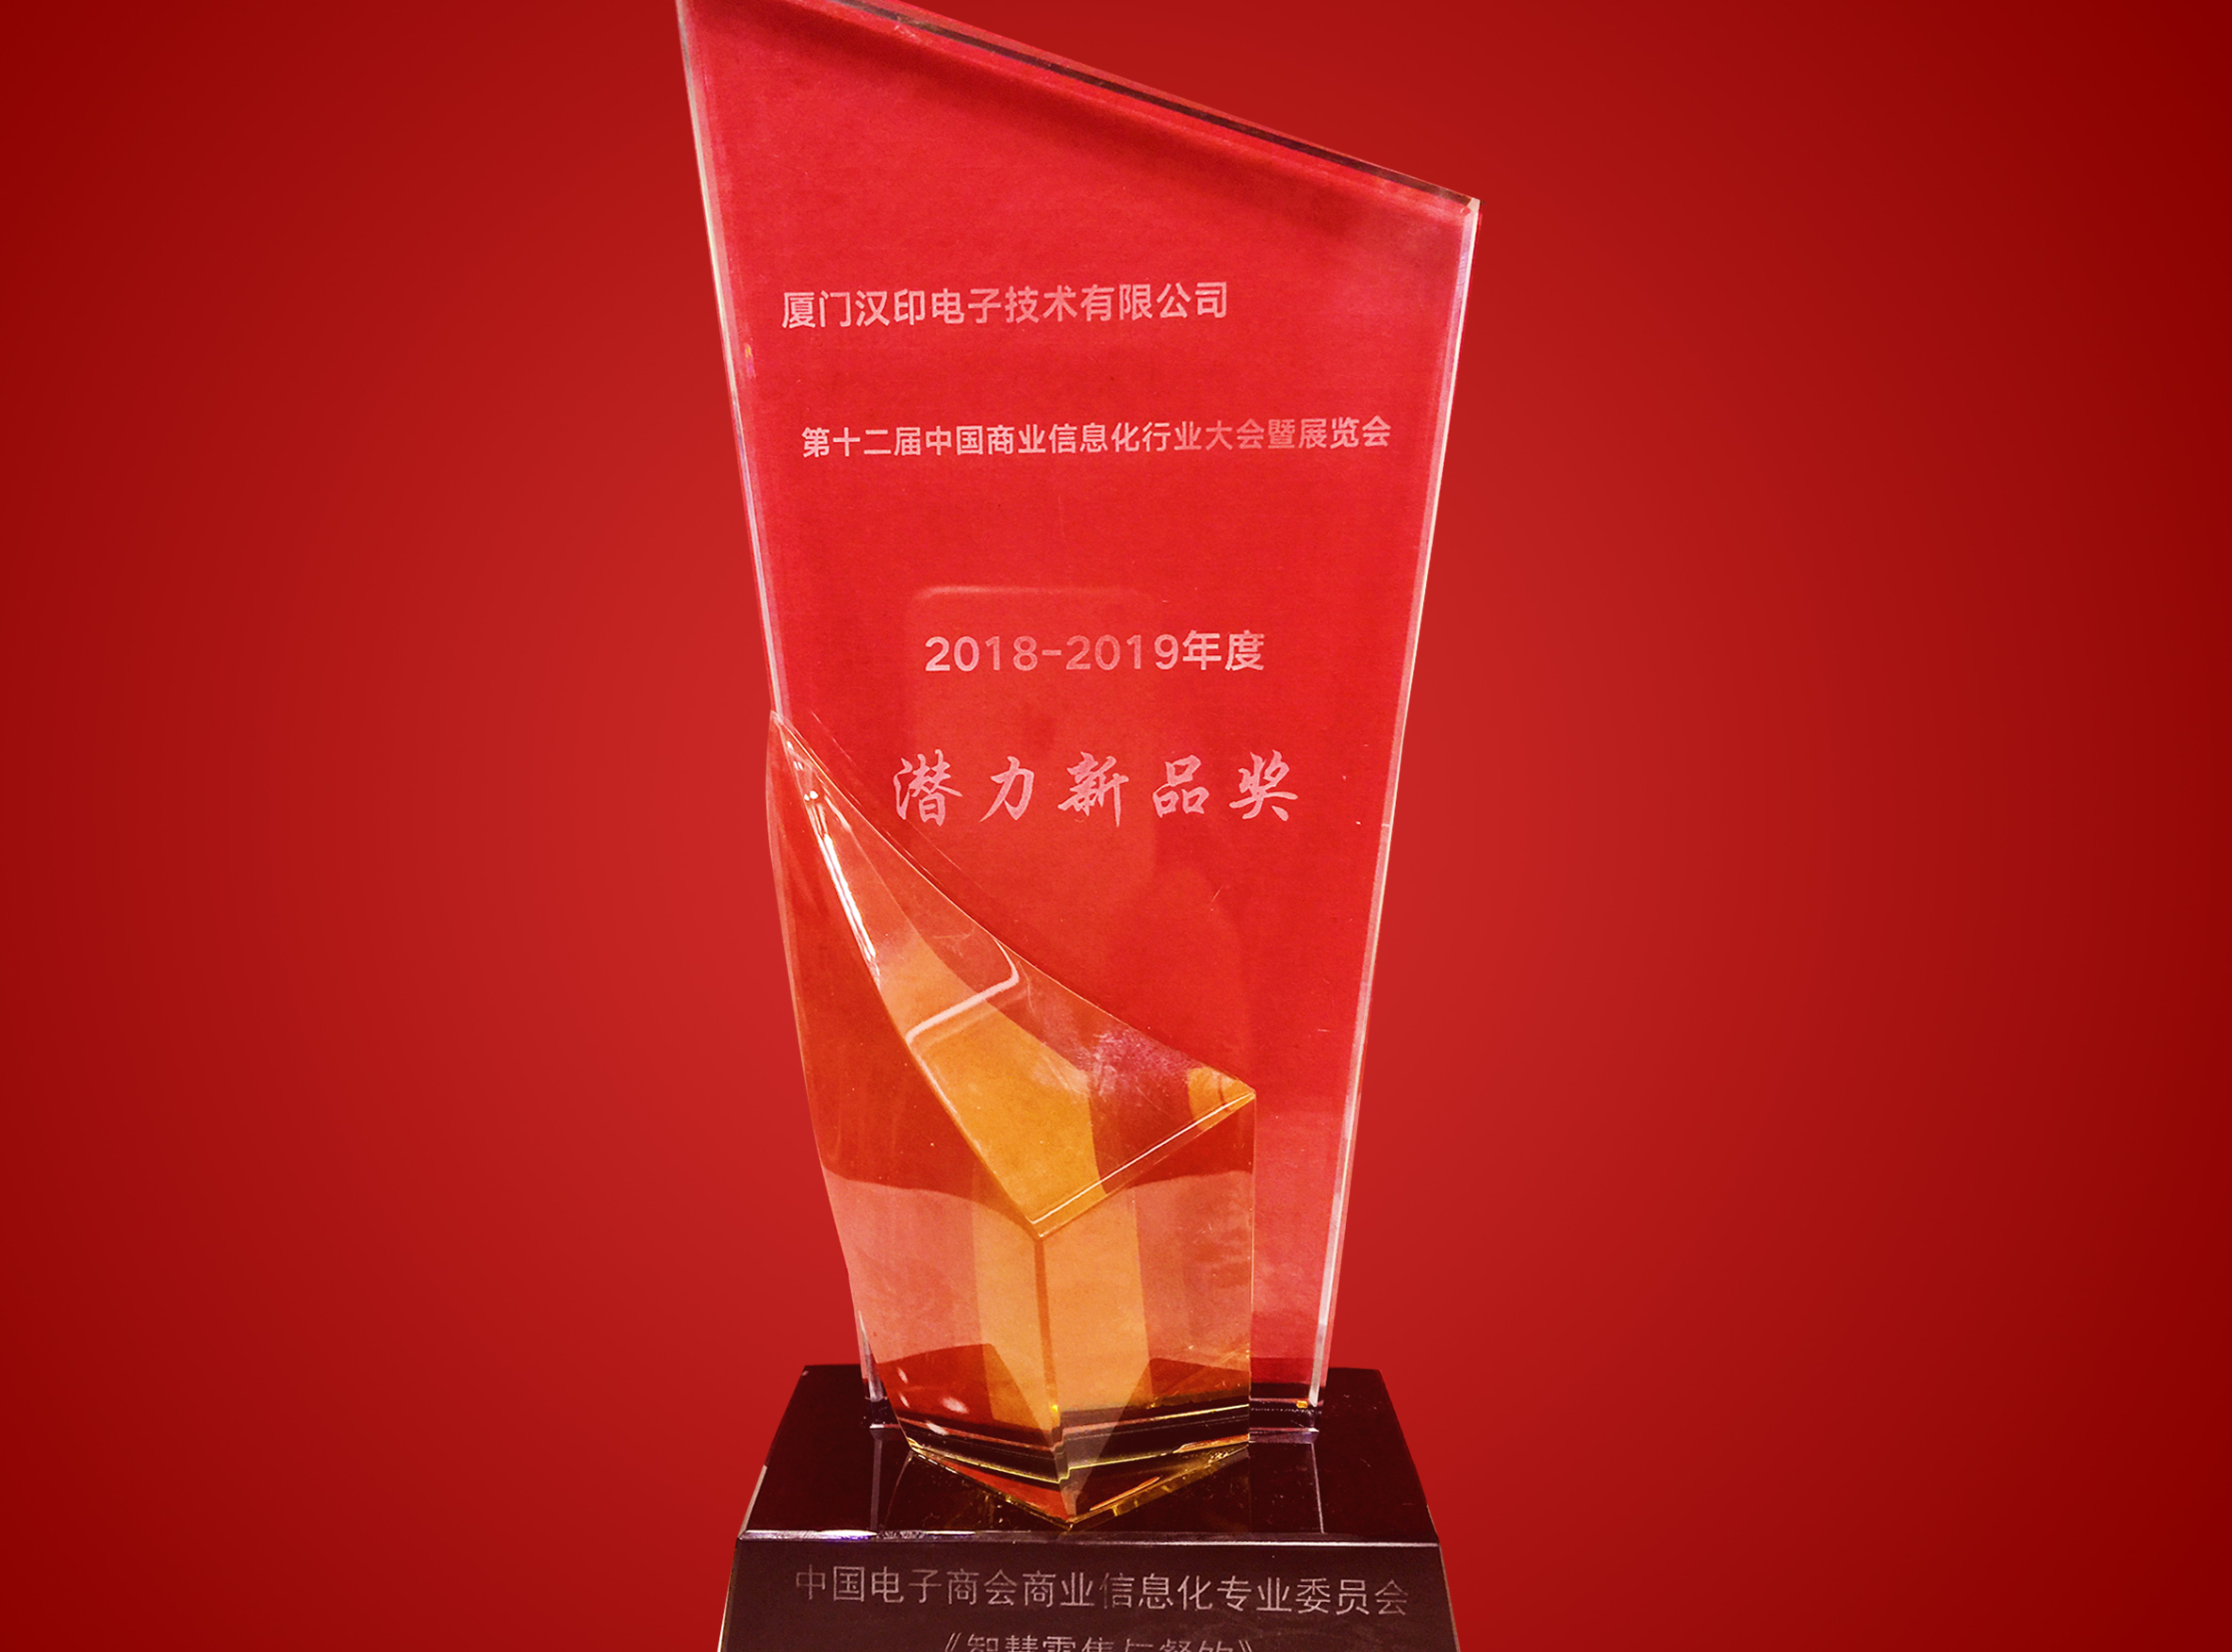 第十二届中国商业信息化行业大会喜获潜力新品奖